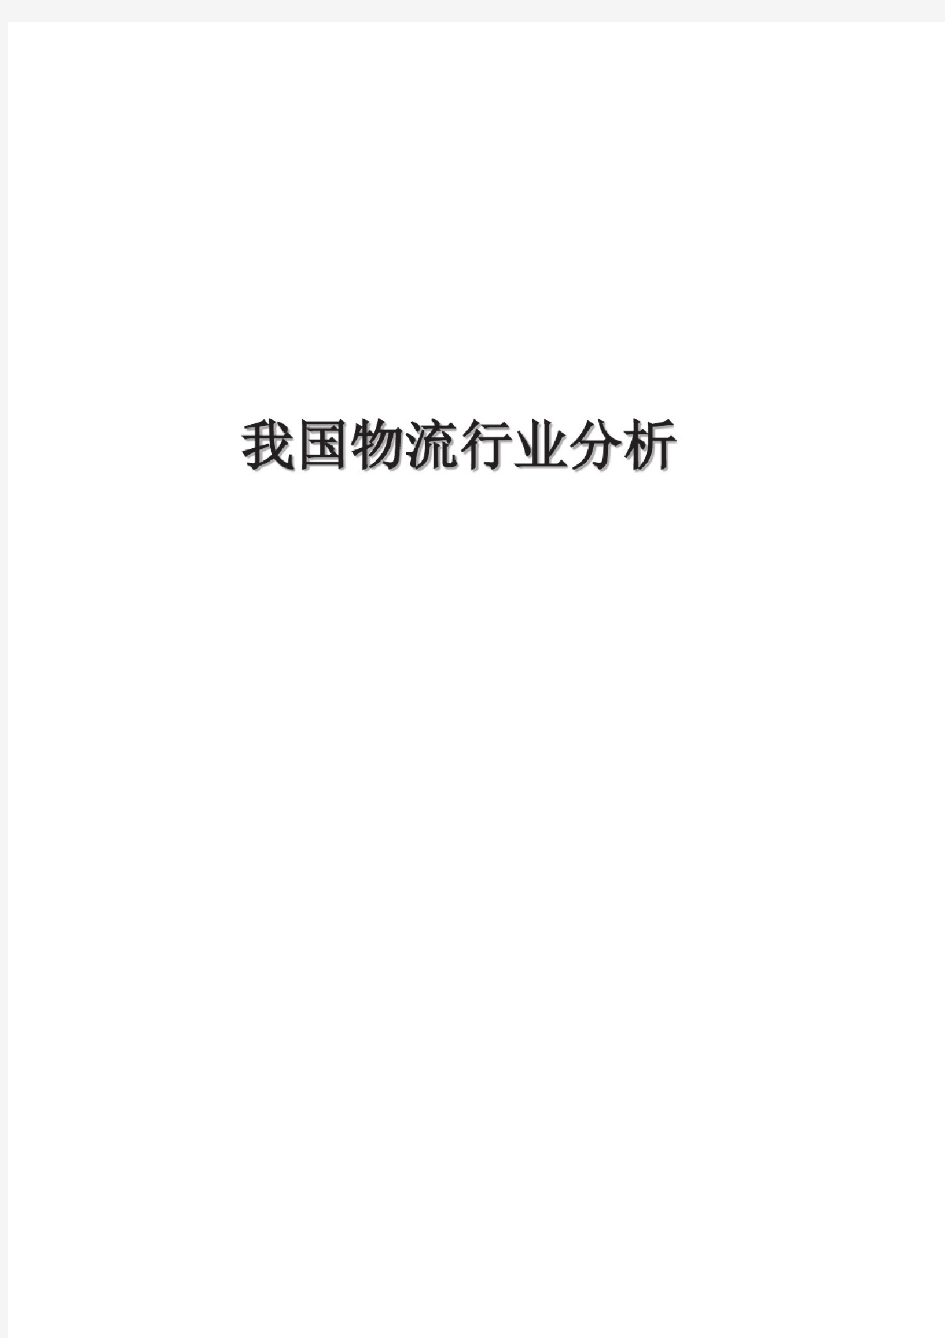 中国物流行业分析报告